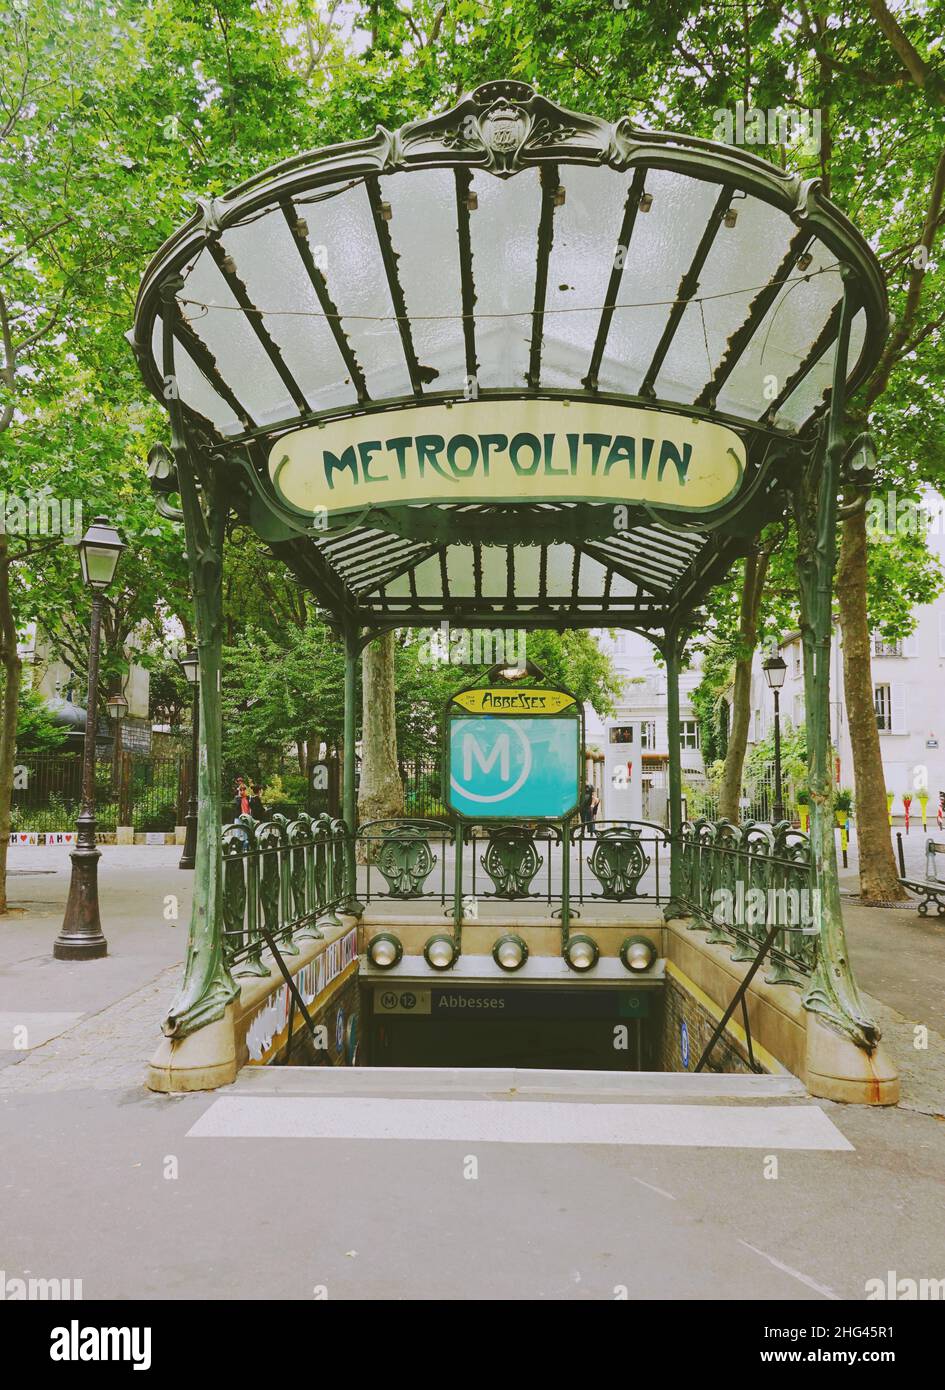 Panneau Metropolitain de Paris, style art nouveau de l'entrée du métro dans le quartier de Montmartre Banque D'Images